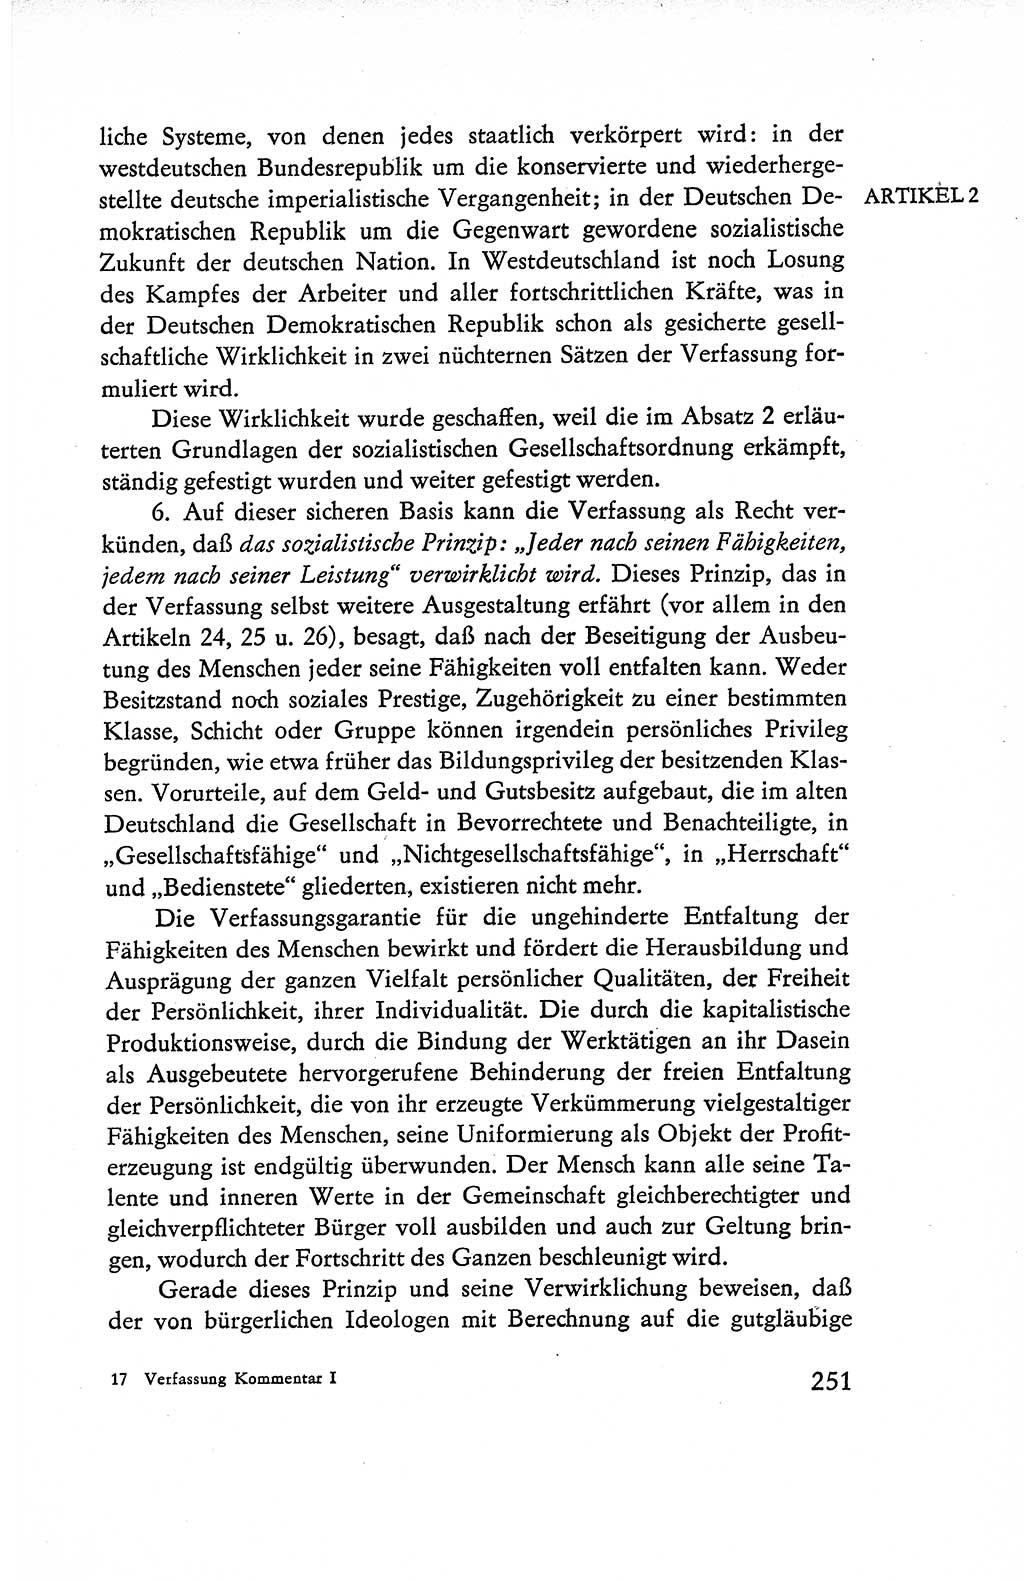 Verfassung der Deutschen Demokratischen Republik (DDR), Dokumente, Kommentar 1969, Band 1, Seite 251 (Verf. DDR Dok. Komm. 1969, Bd. 1, S. 251)